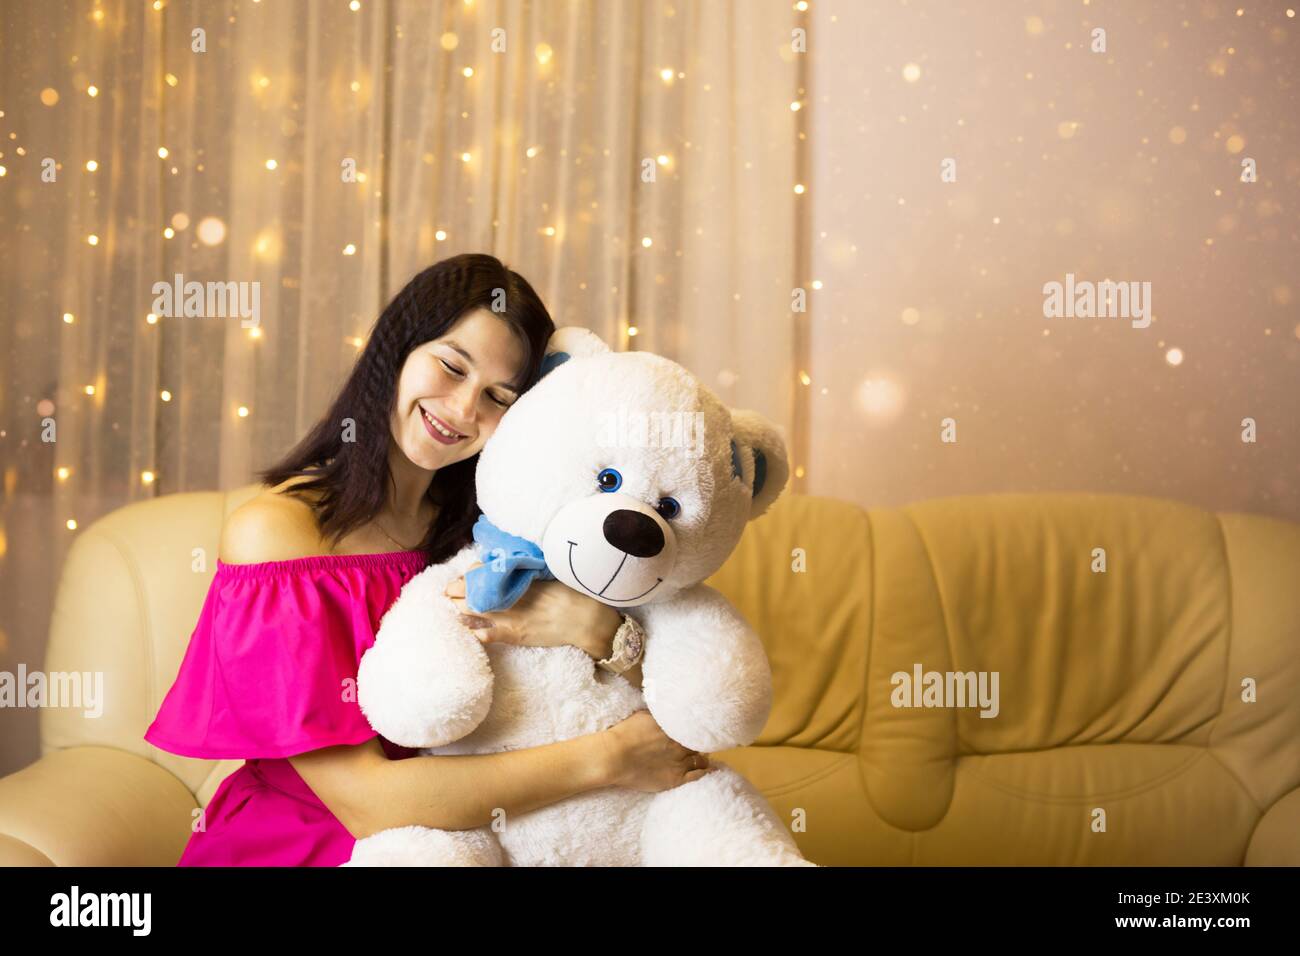 Ragazza felice in un vestito rosa abbracciando un grande orso bianco morbido a casa sul divano. Regalo da una persona cara, giorno di San Valentino, compleanno, vacanza. Spazio di copia Foto Stock